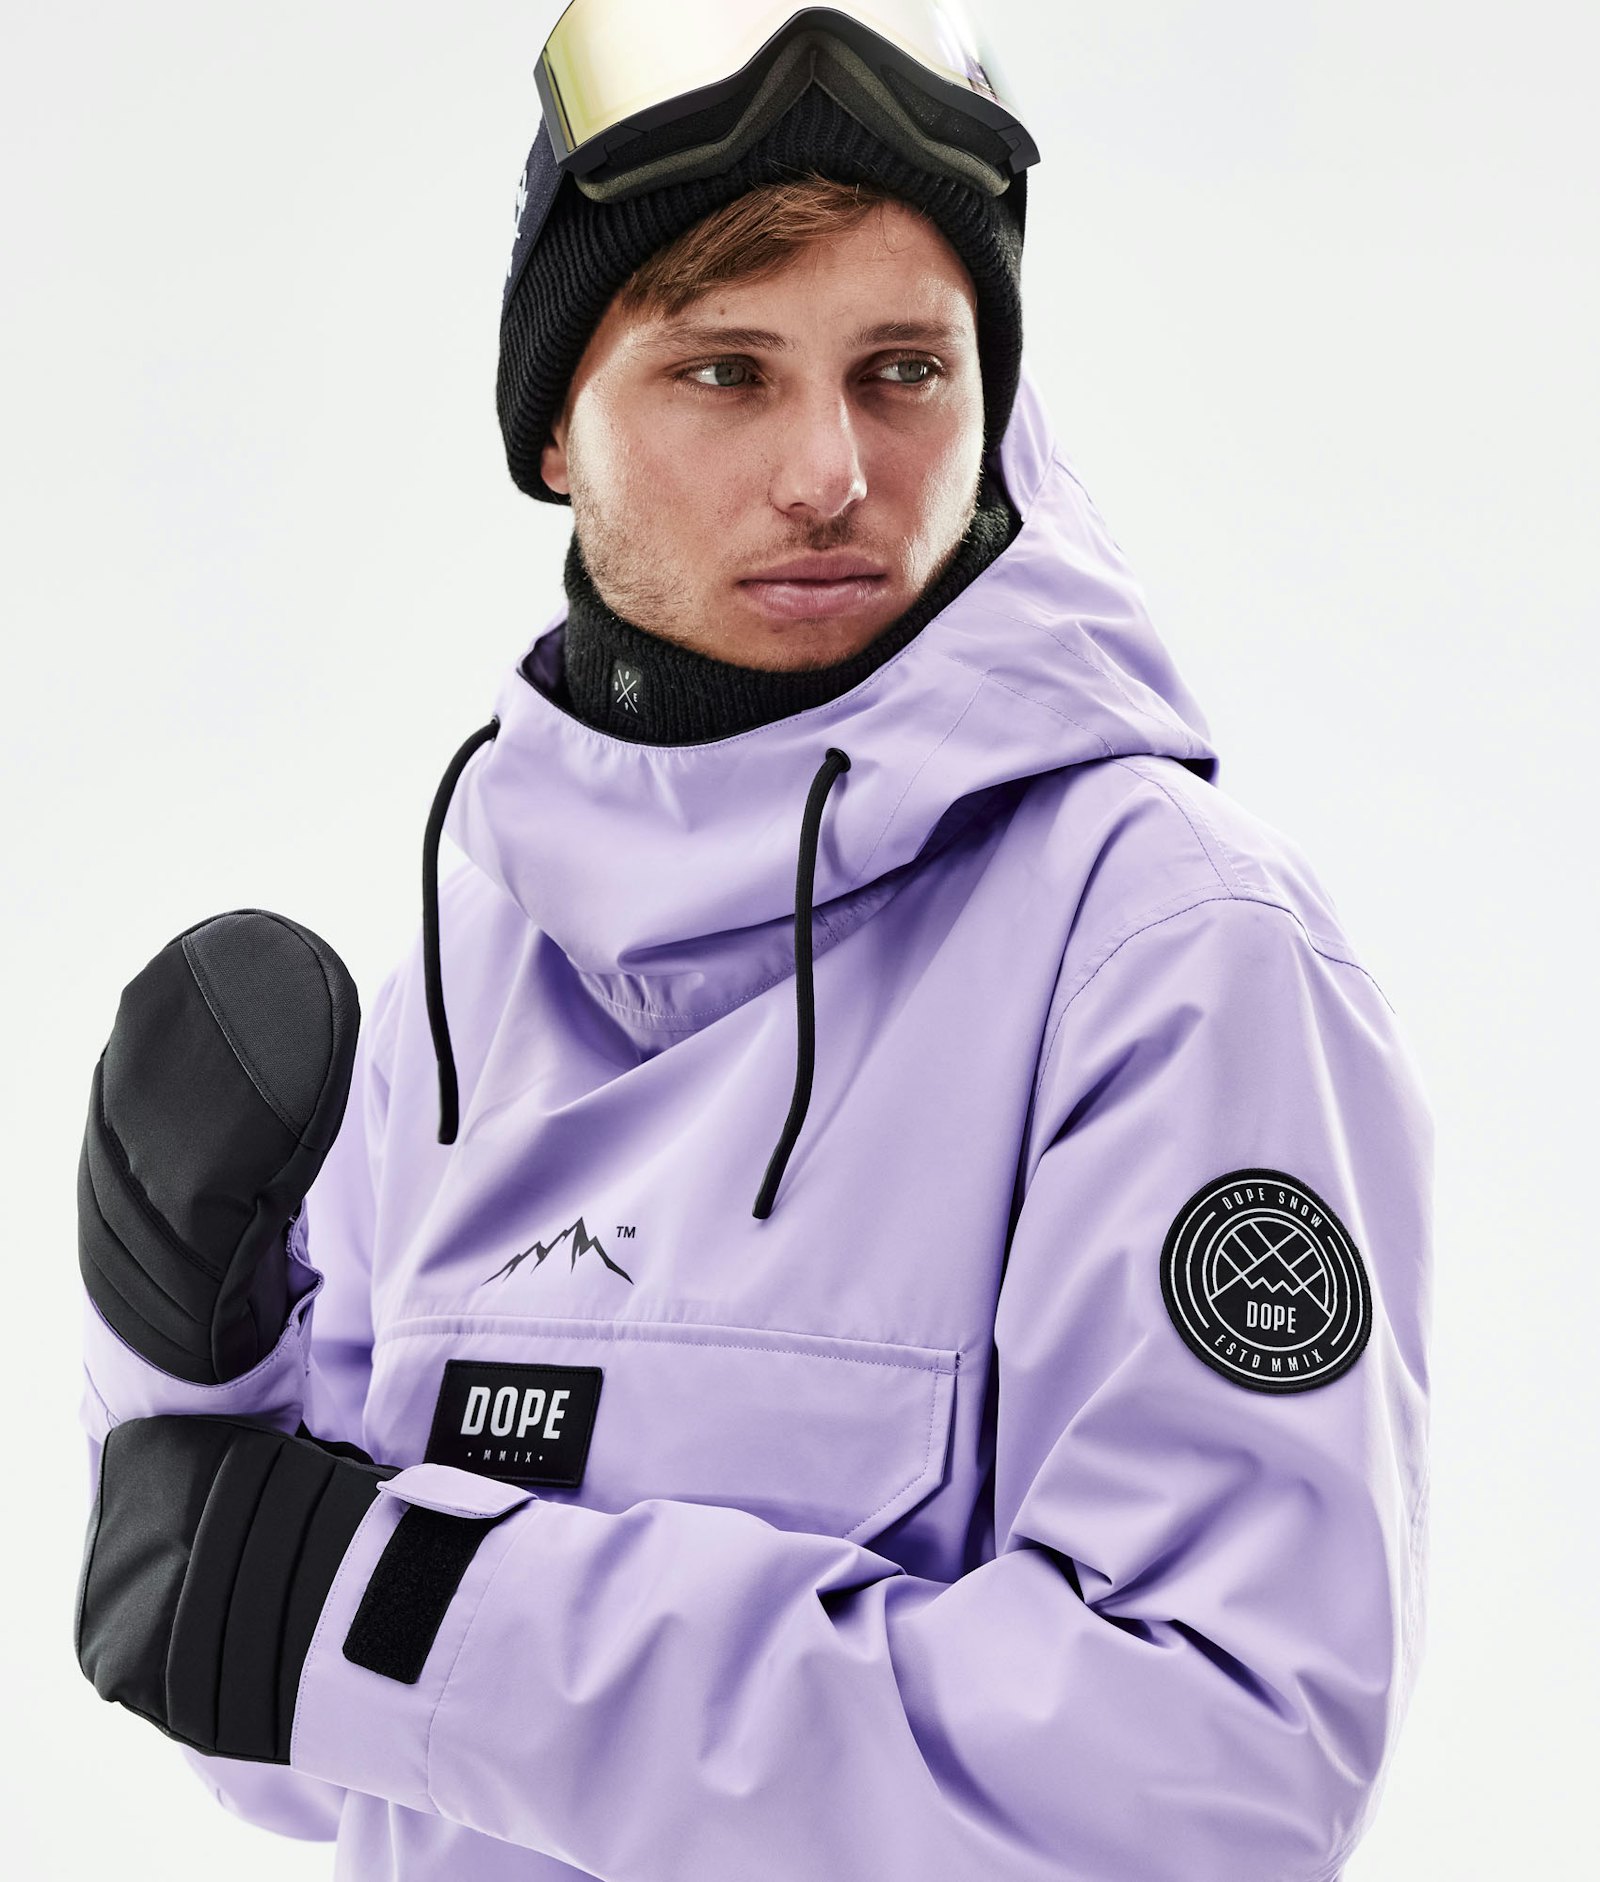 Dope Blizzard 2021 Ski Jacket Men Faded Violet